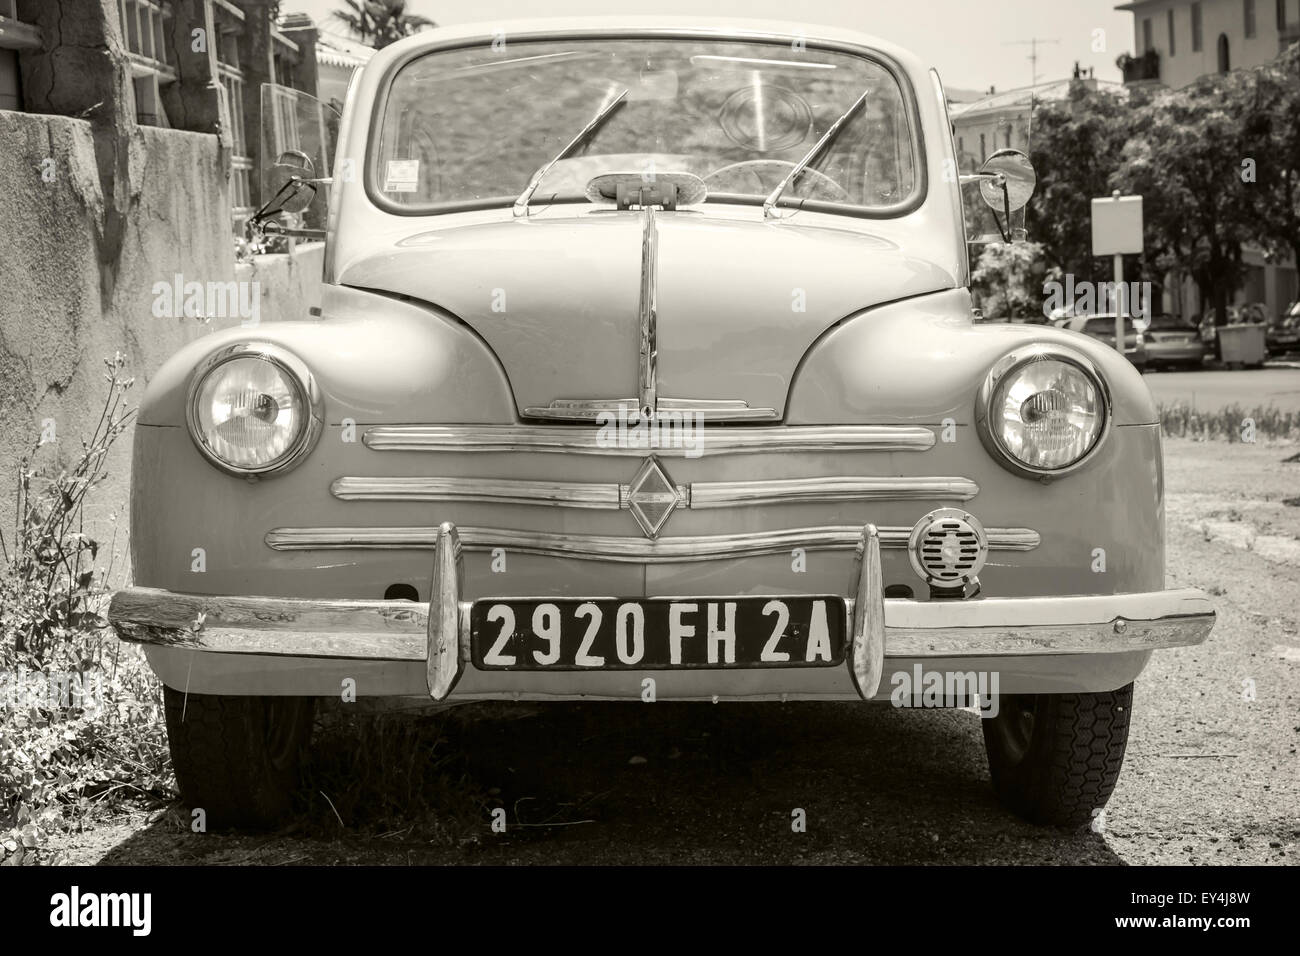 Ajaccio, Francia - luglio 6, 2015: Renault 4CV old-timer auto economia sta parcheggiato su una strada in città francese, vista frontale Foto Stock